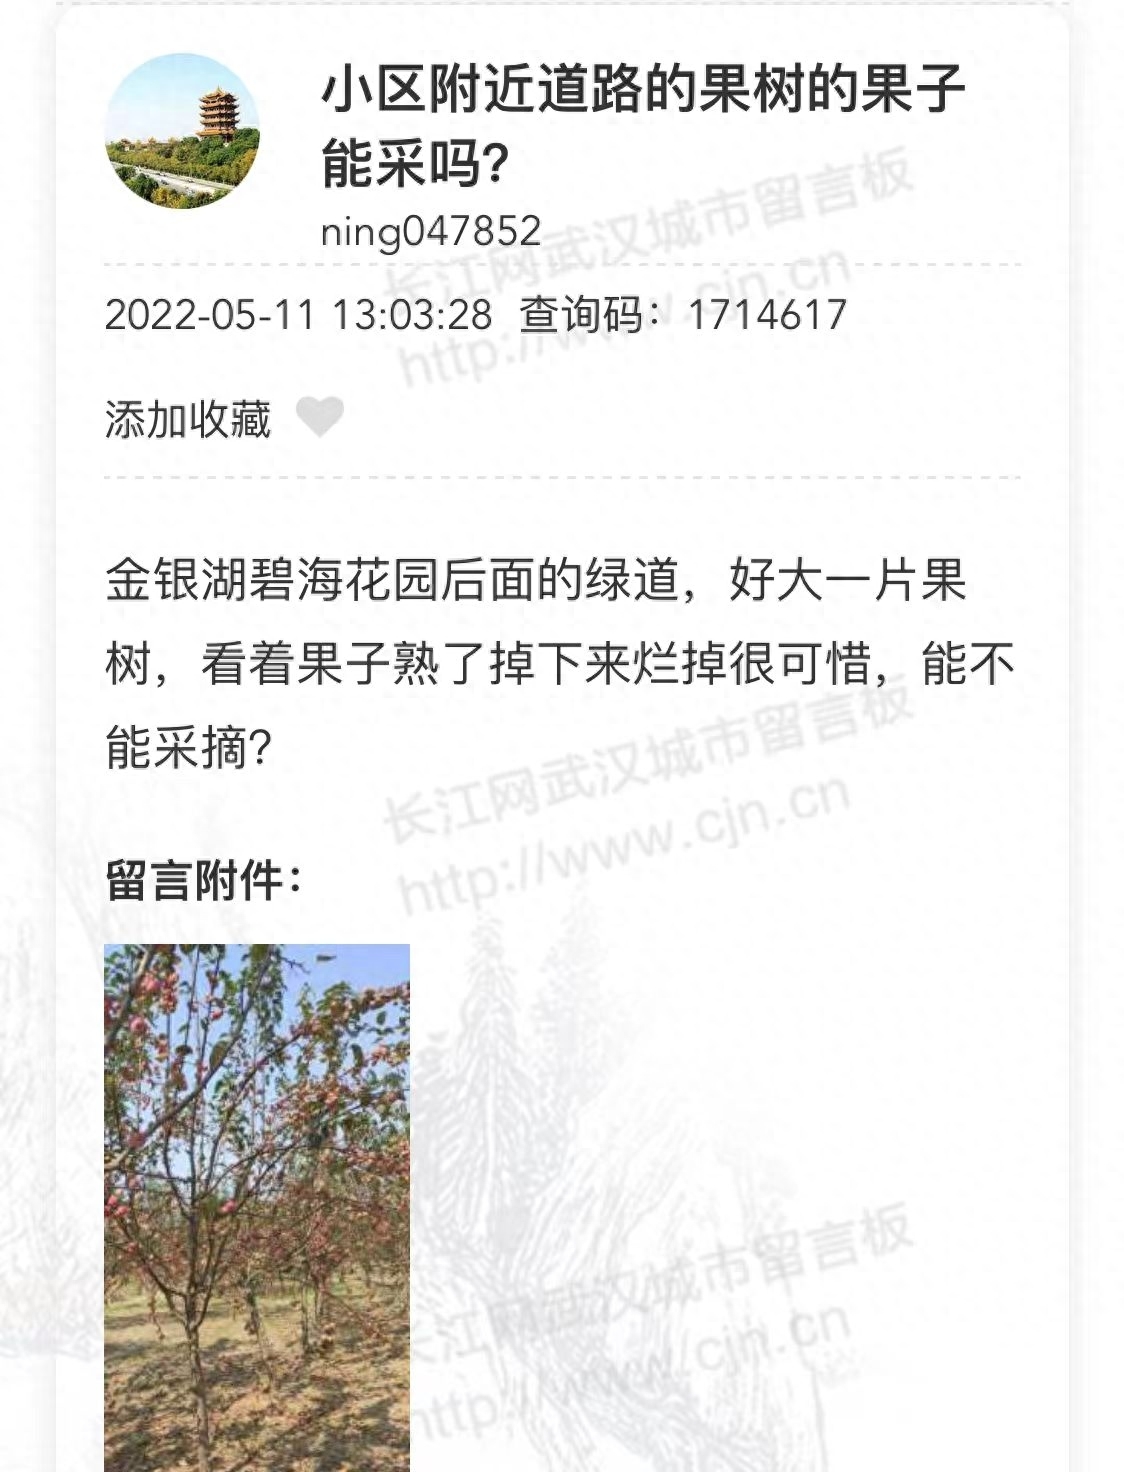 近期，有多位网友在武汉城市留言板上反映街边公园种了很多果树现在到了果子成熟的季节看起来怪诱人的，能不能摘？网友吵翻了网友热议：看着果子熟了掉下来烂掉好可惜啊案例一